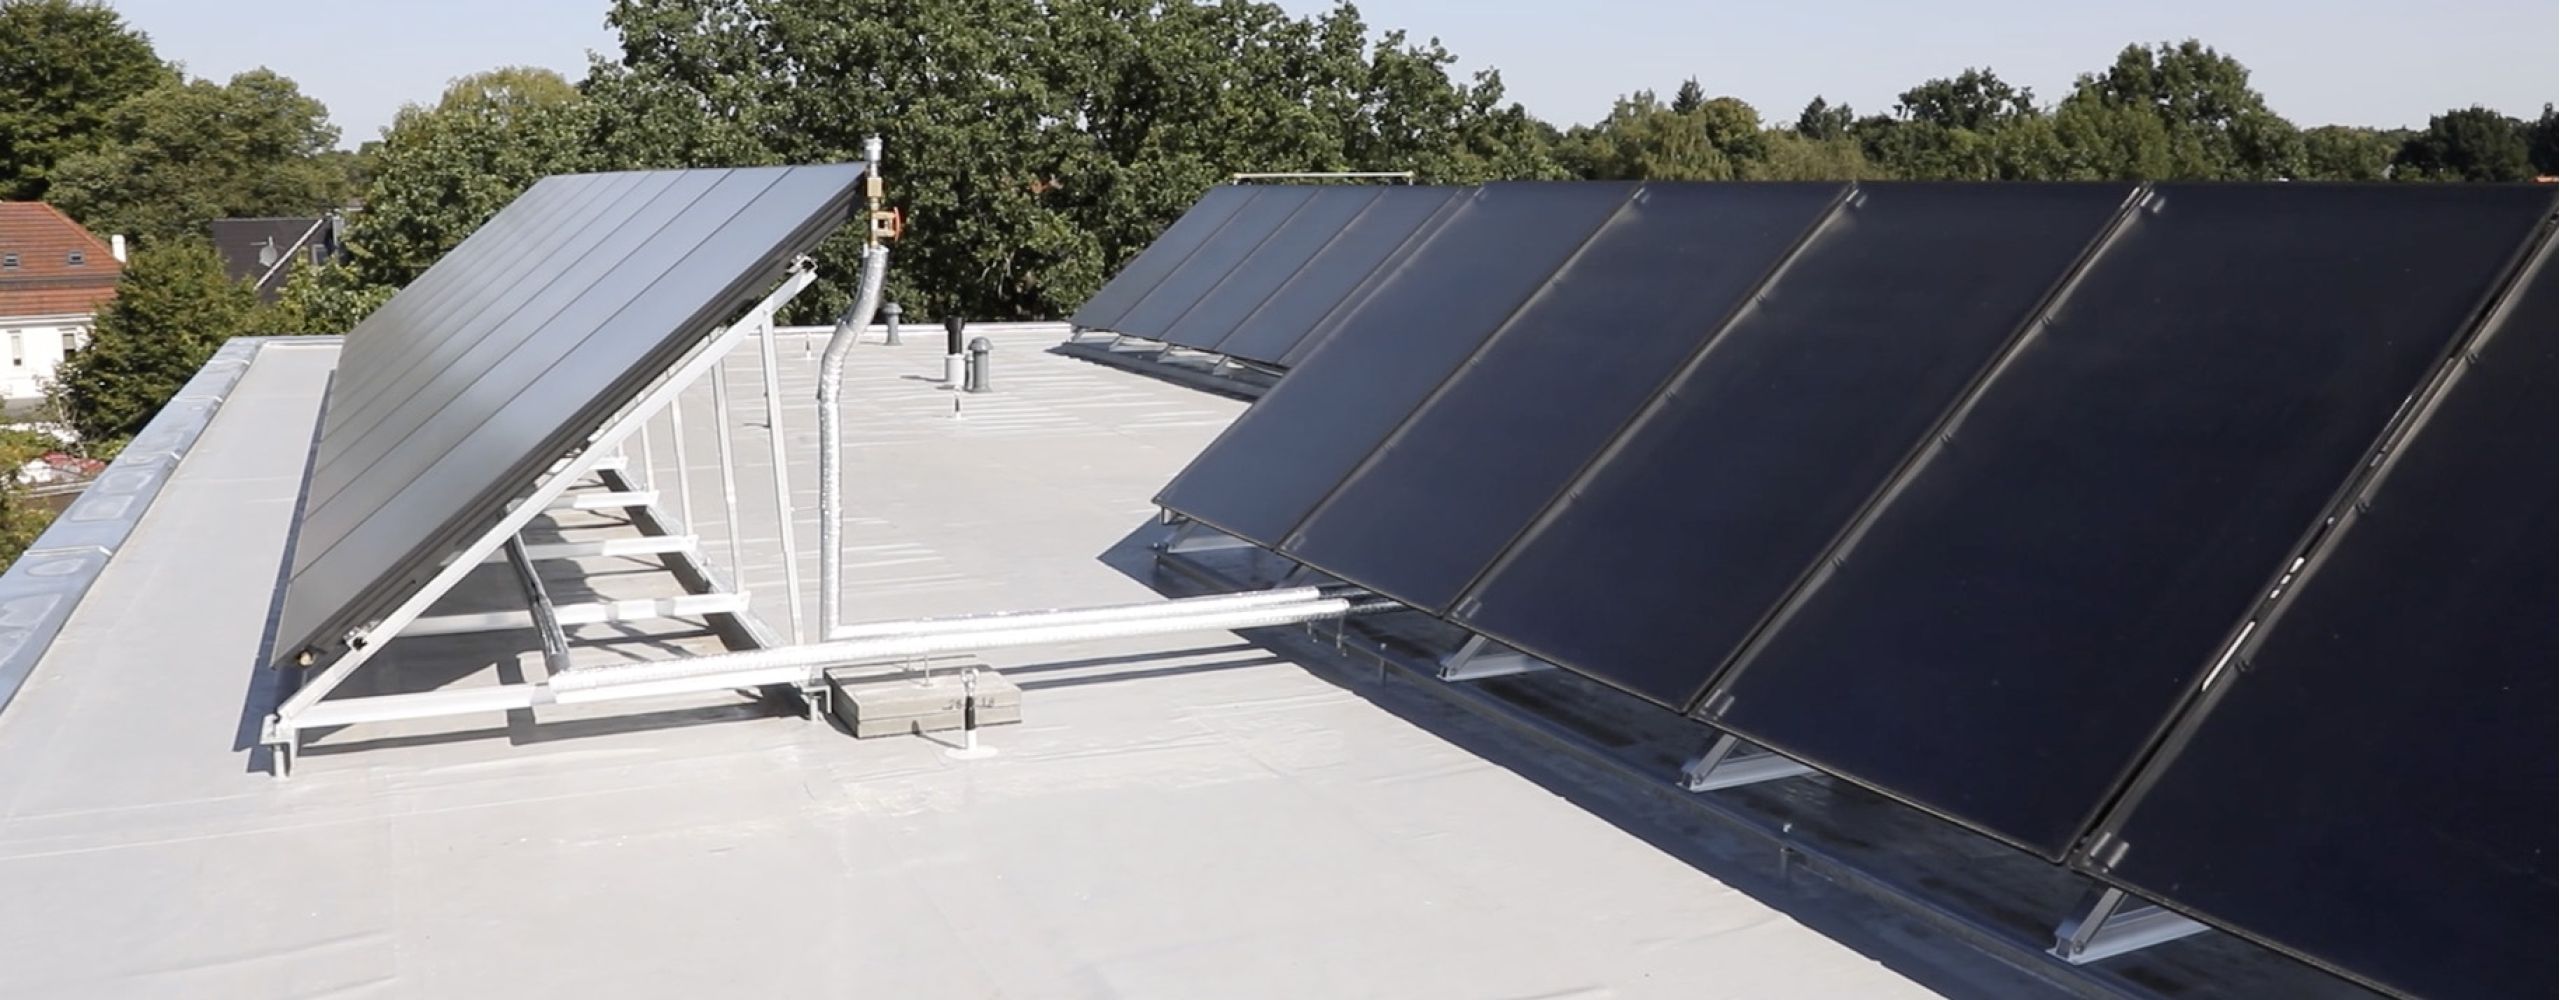 Sonnenkollektoren auf dem Dach einer Immobilie mit Solarthermie Anlage